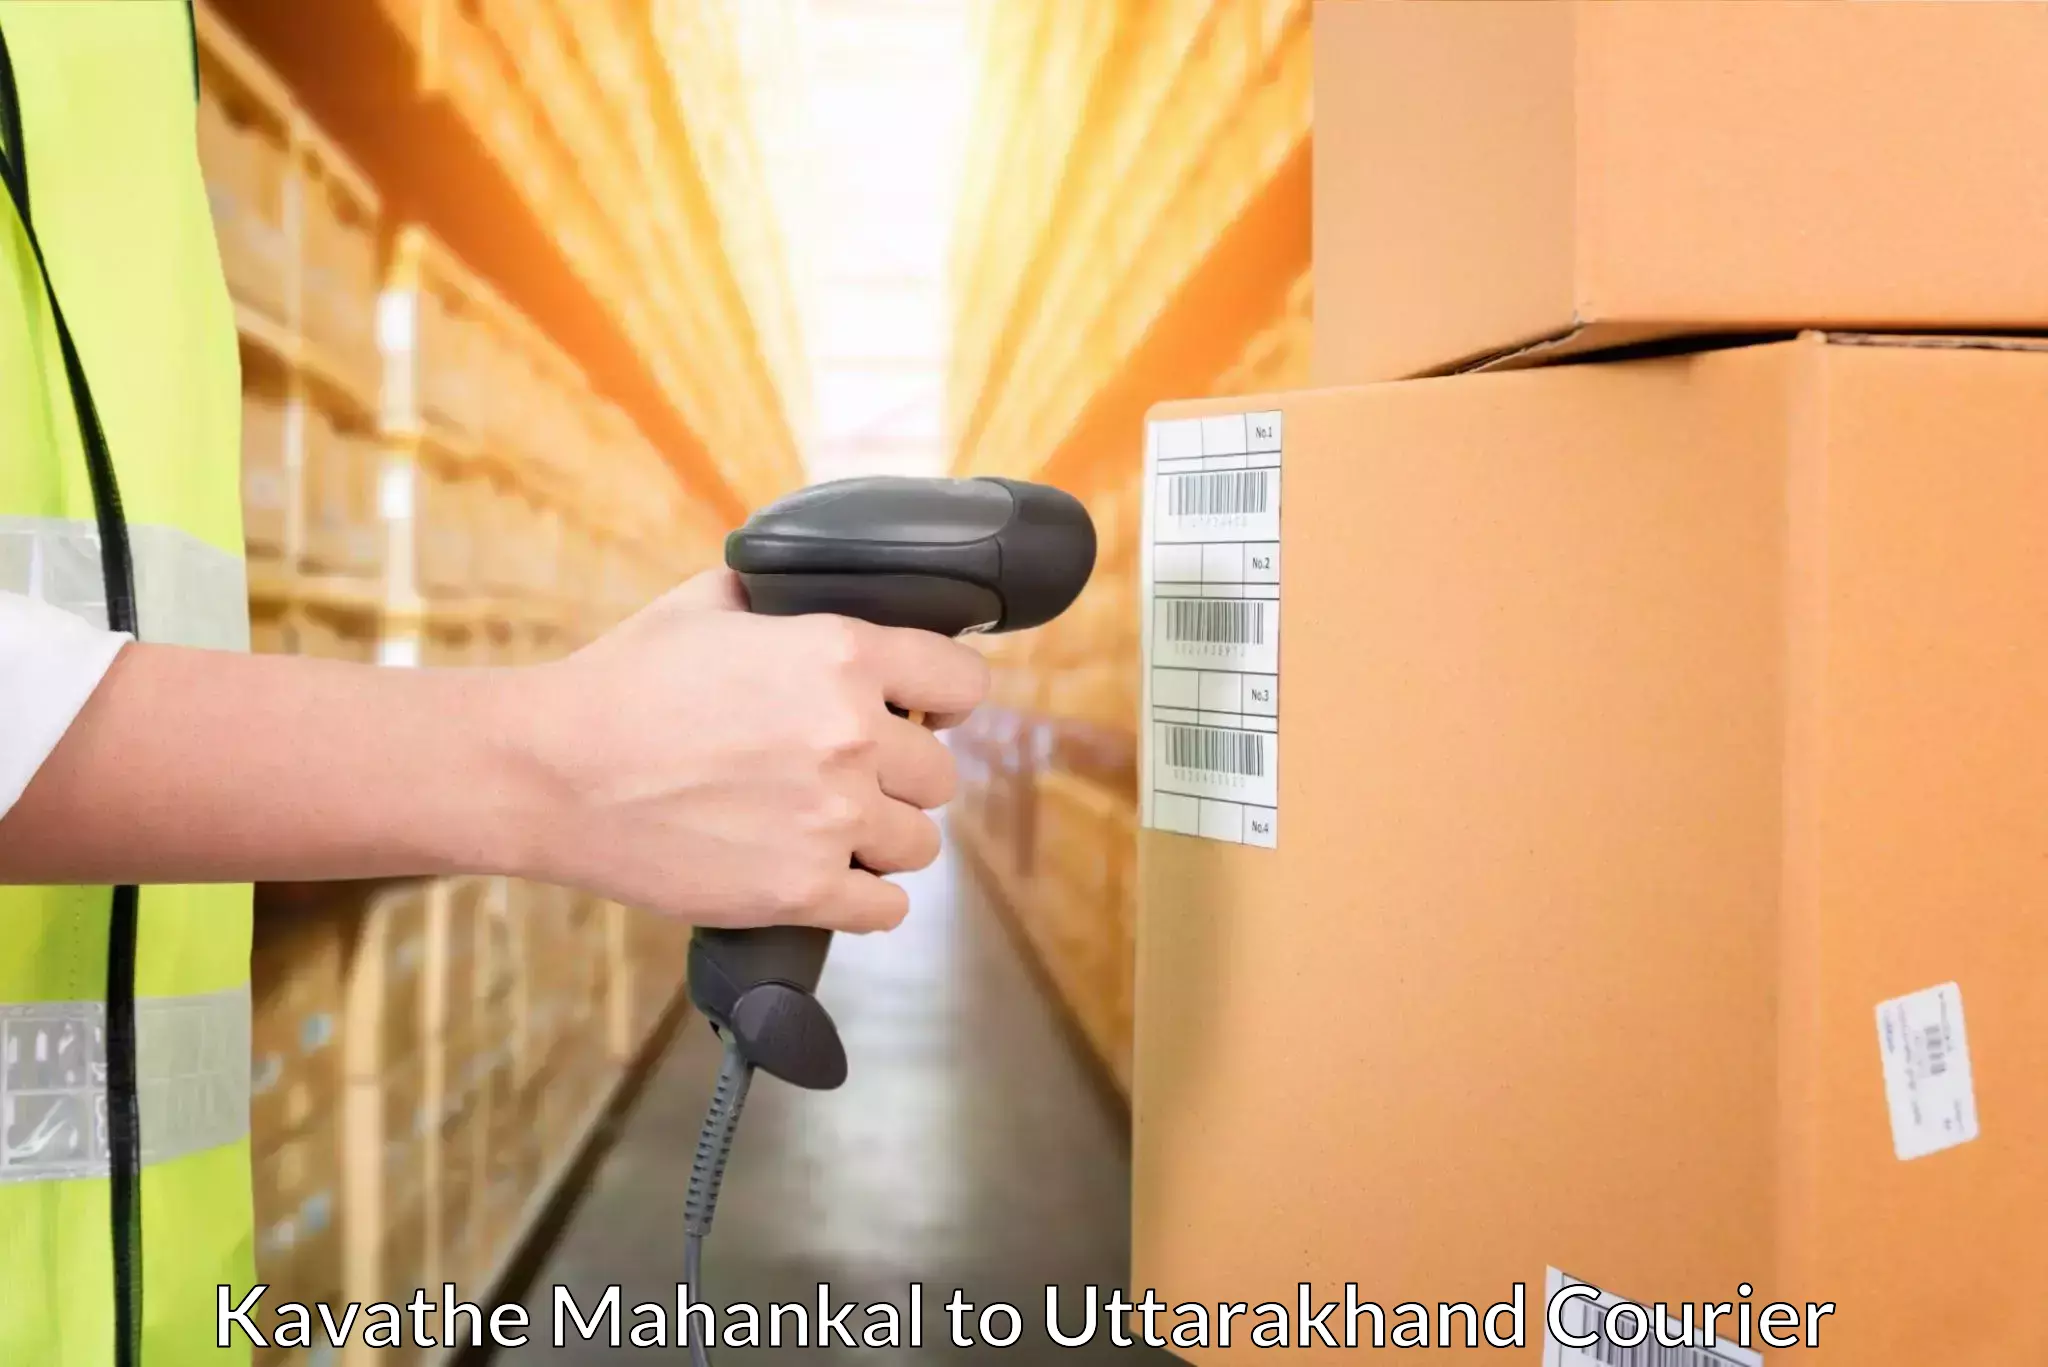 Versatile courier options Kavathe Mahankal to IIT Roorkee